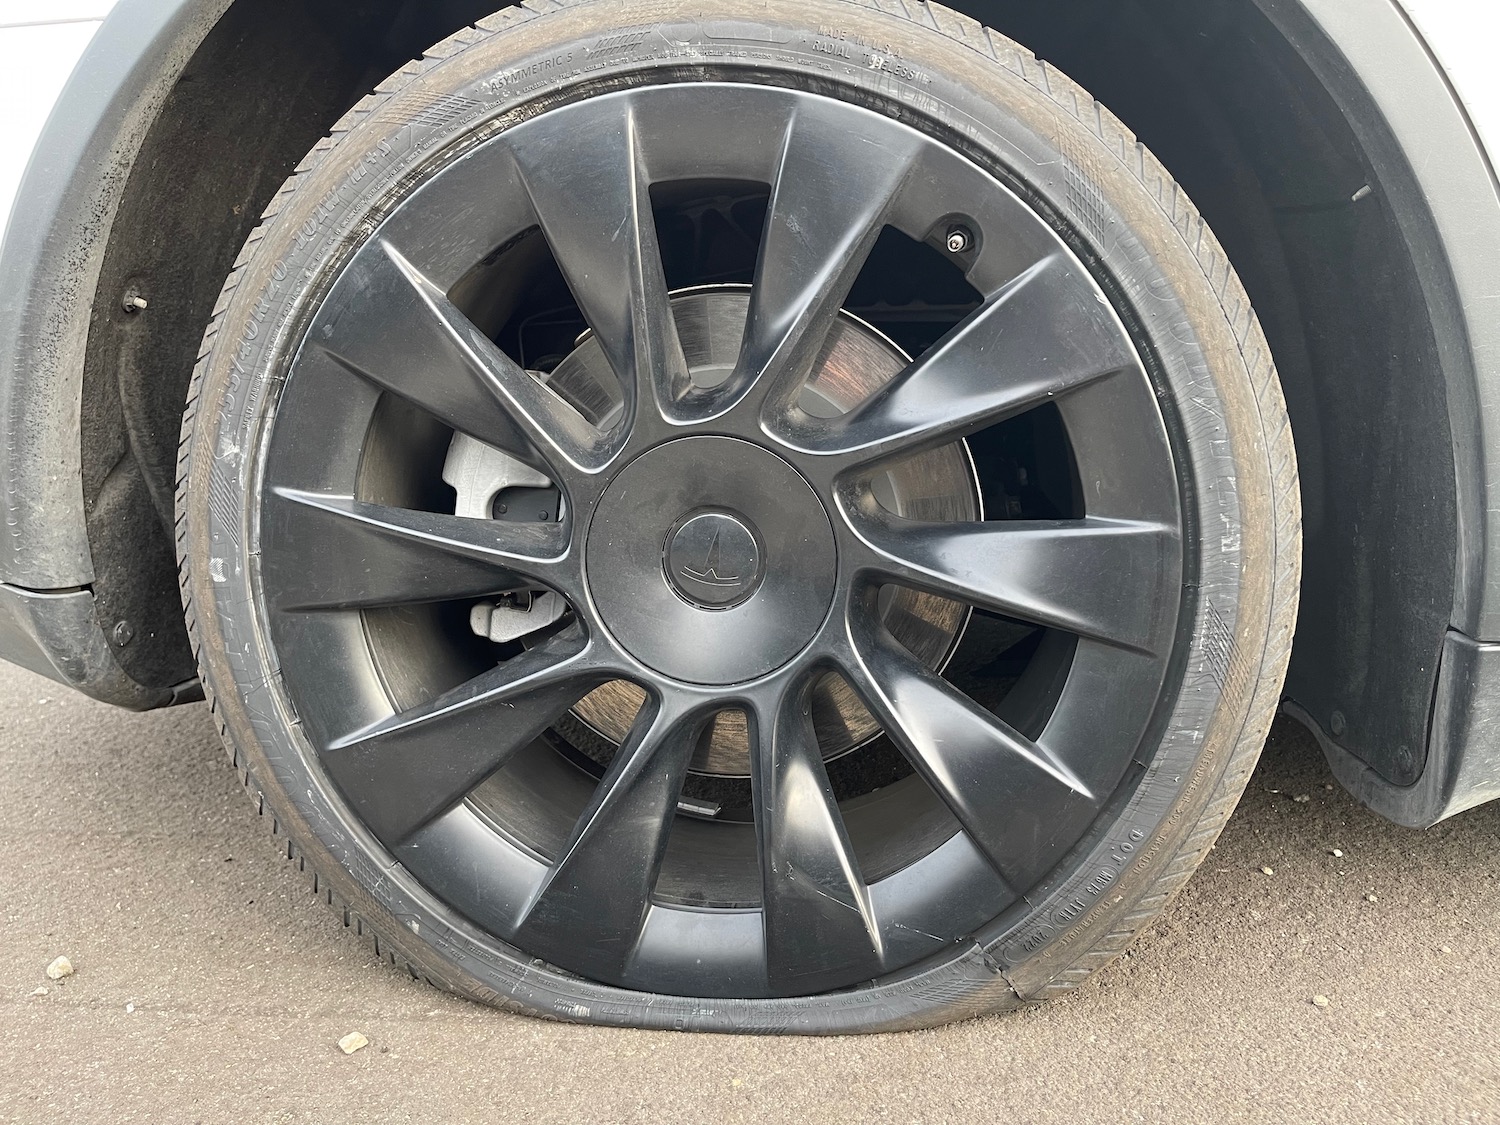 a flat tire on a car